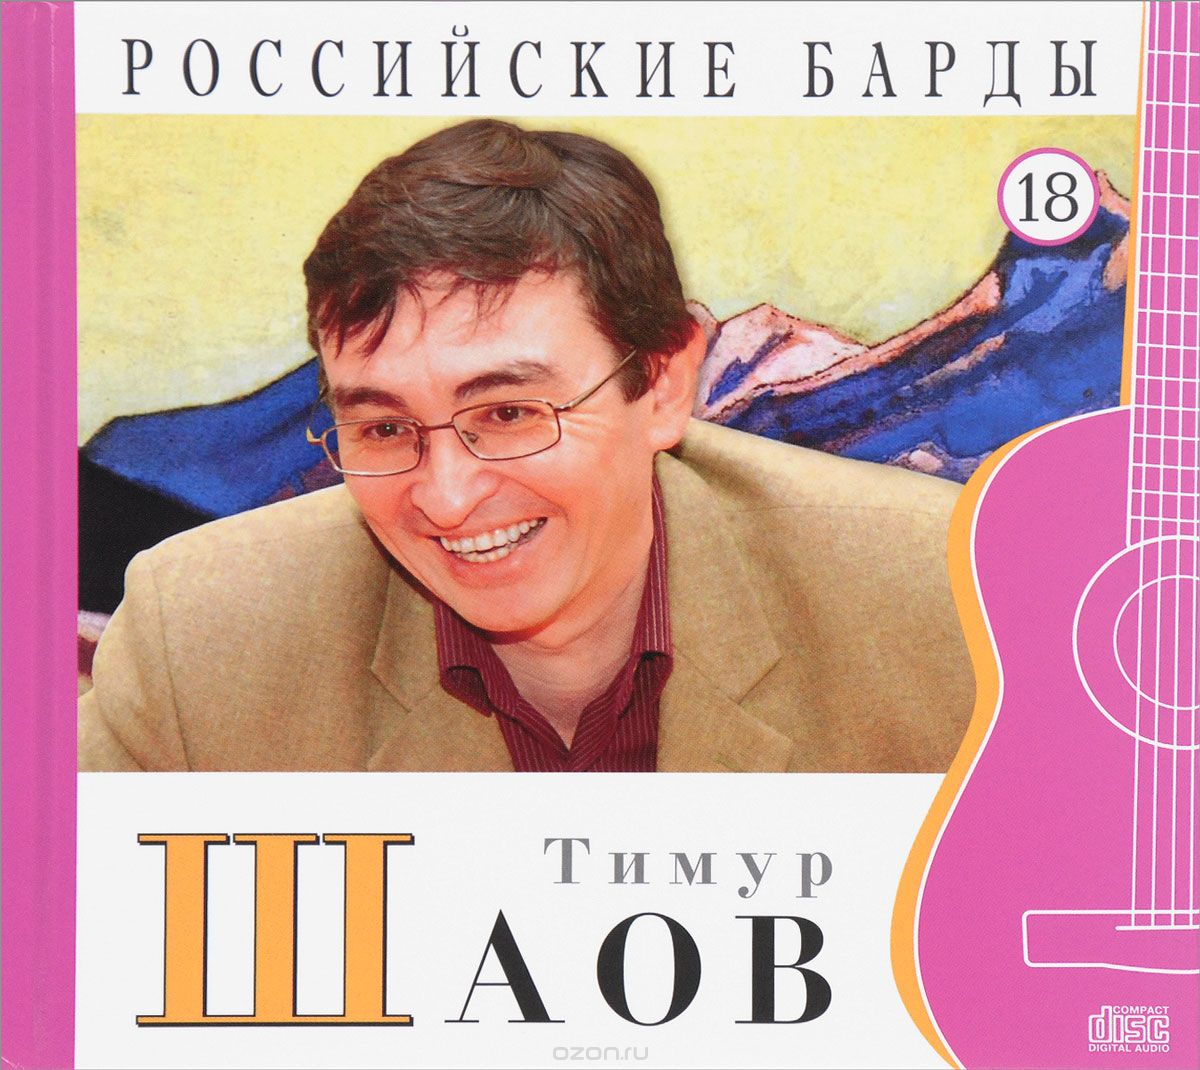 Скачать книгу "Российские барды. Том 18. Тимур Шаов (+ аудио CD)"